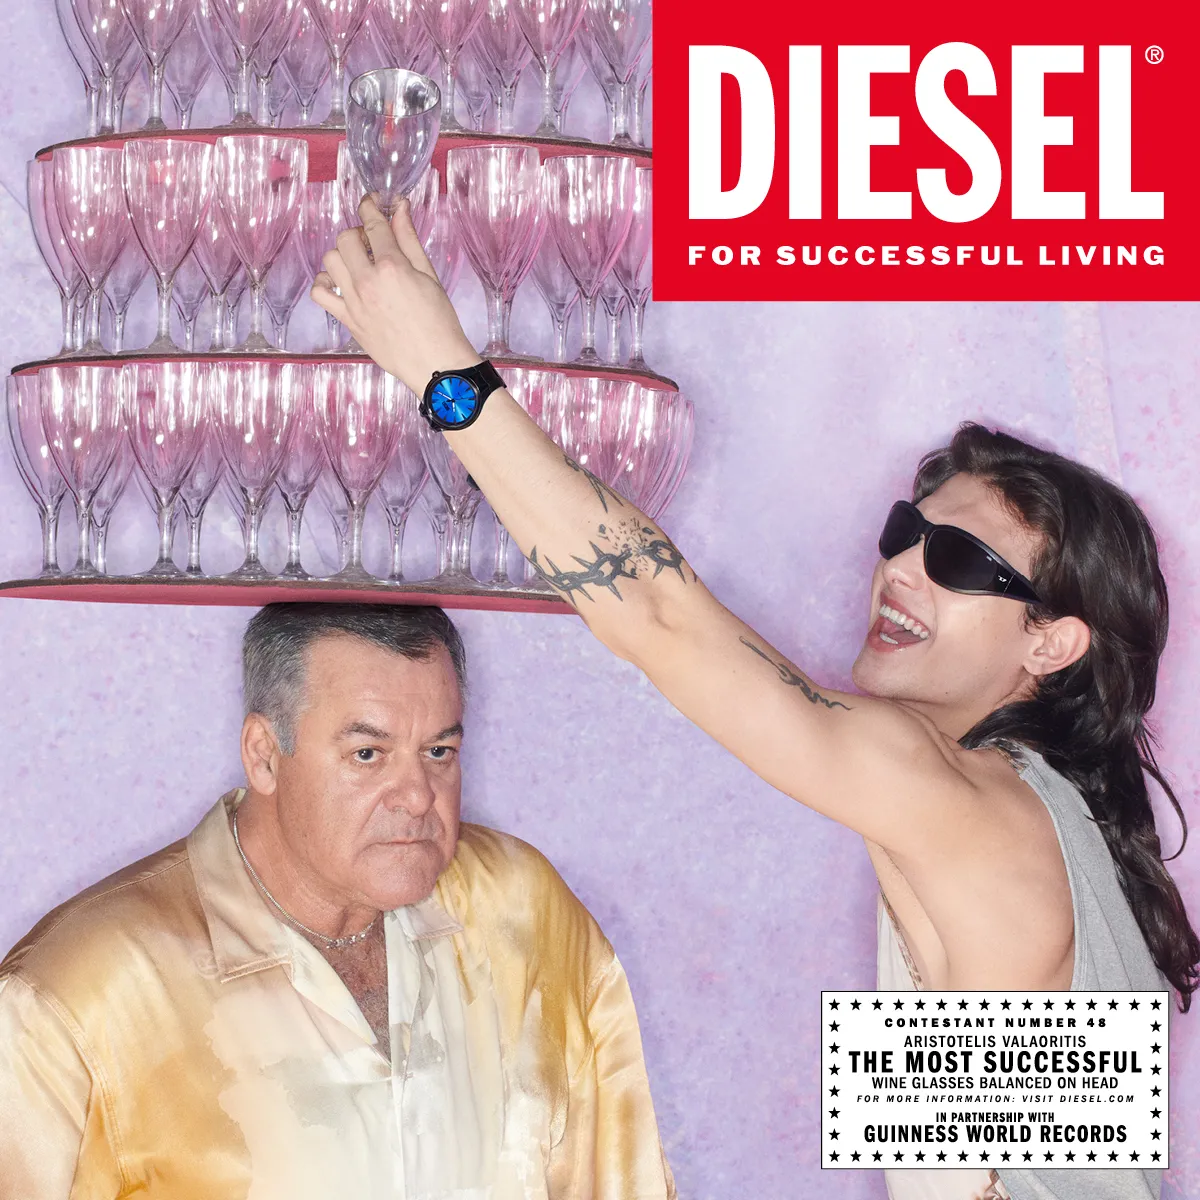   Diesel